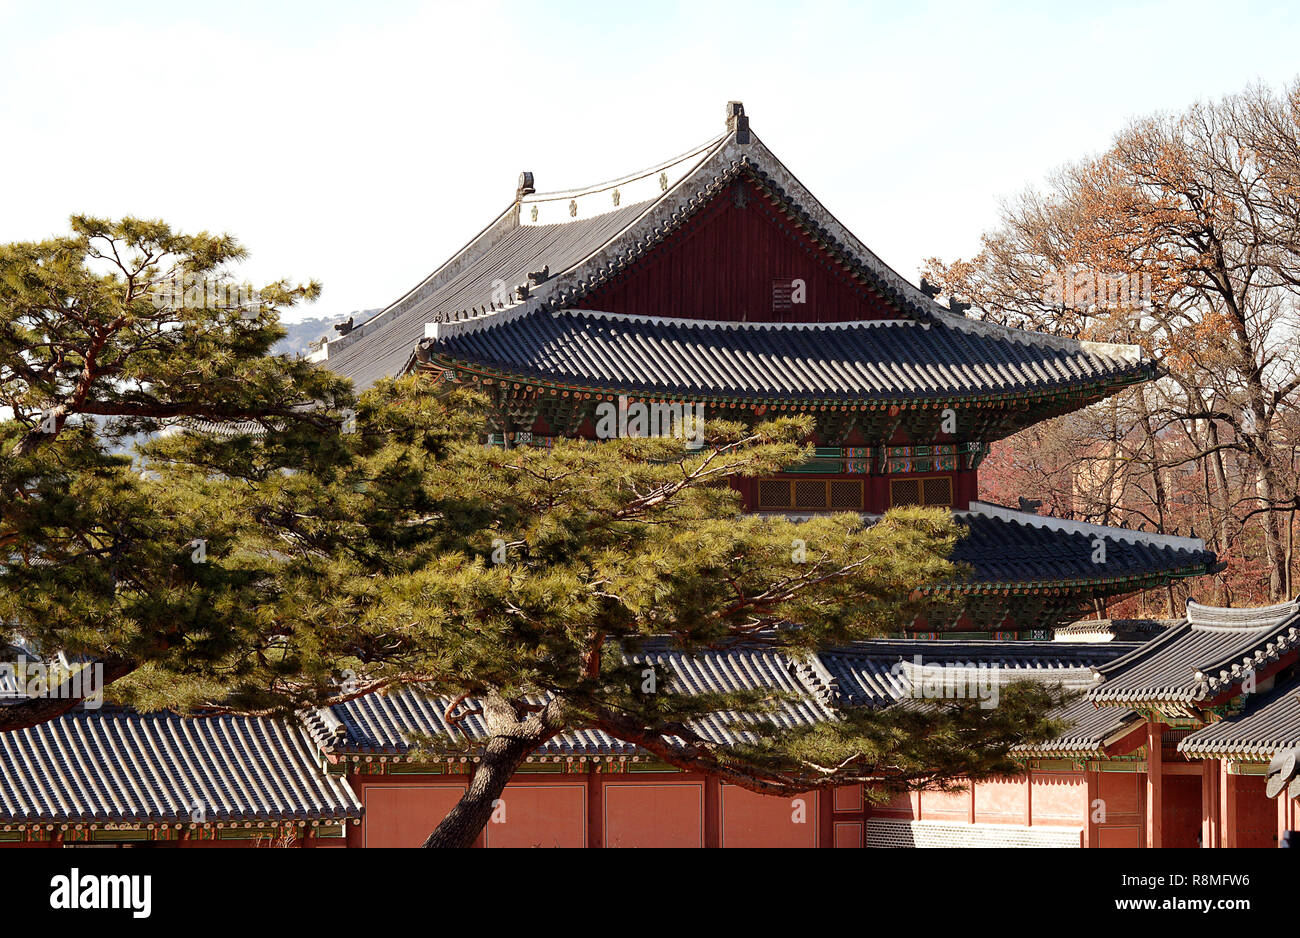 Tetti Hipped, piastrelle, decorazioni dipinte, eremiti, i monaci e i mostri sul tetto come custodi, tipico coreano sontuosa architettura con pino Coreano Foto Stock